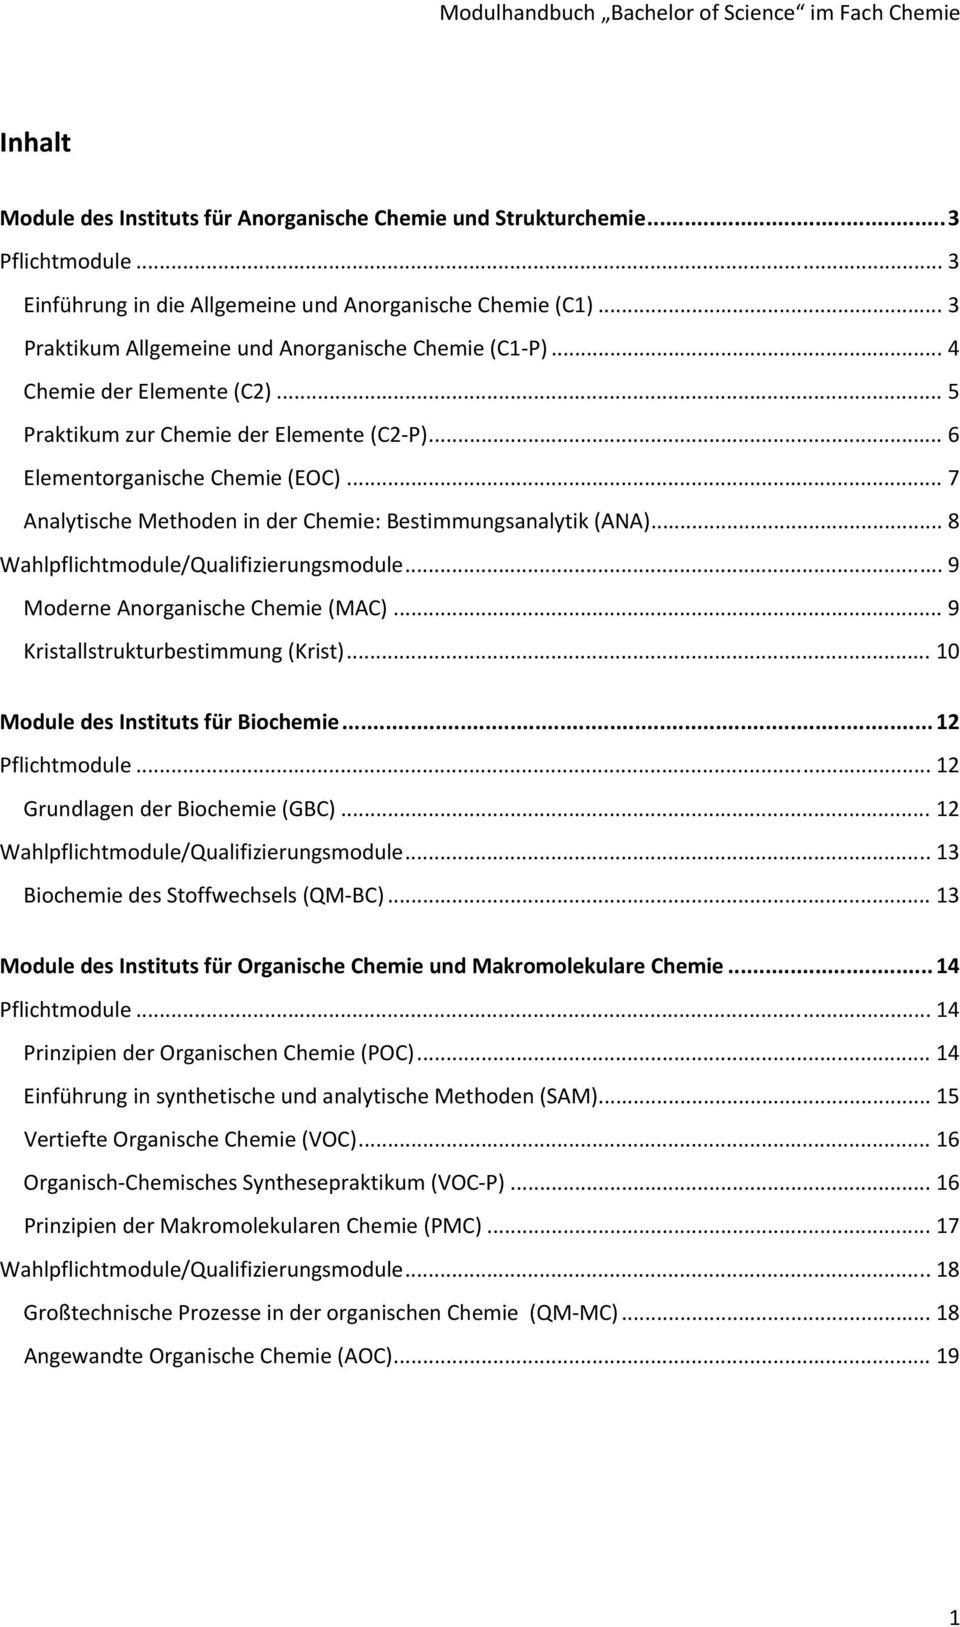 .. 7 Analytische Methoden in der Chemie: Bestimmungsanalytik (ANA)... 8 Wahlpflichtmodule/Qualifizierungsmodule... 9 Moderne Anorganische Chemie (MAC)... 9 Kristallstrukturbestimmung (Krist).